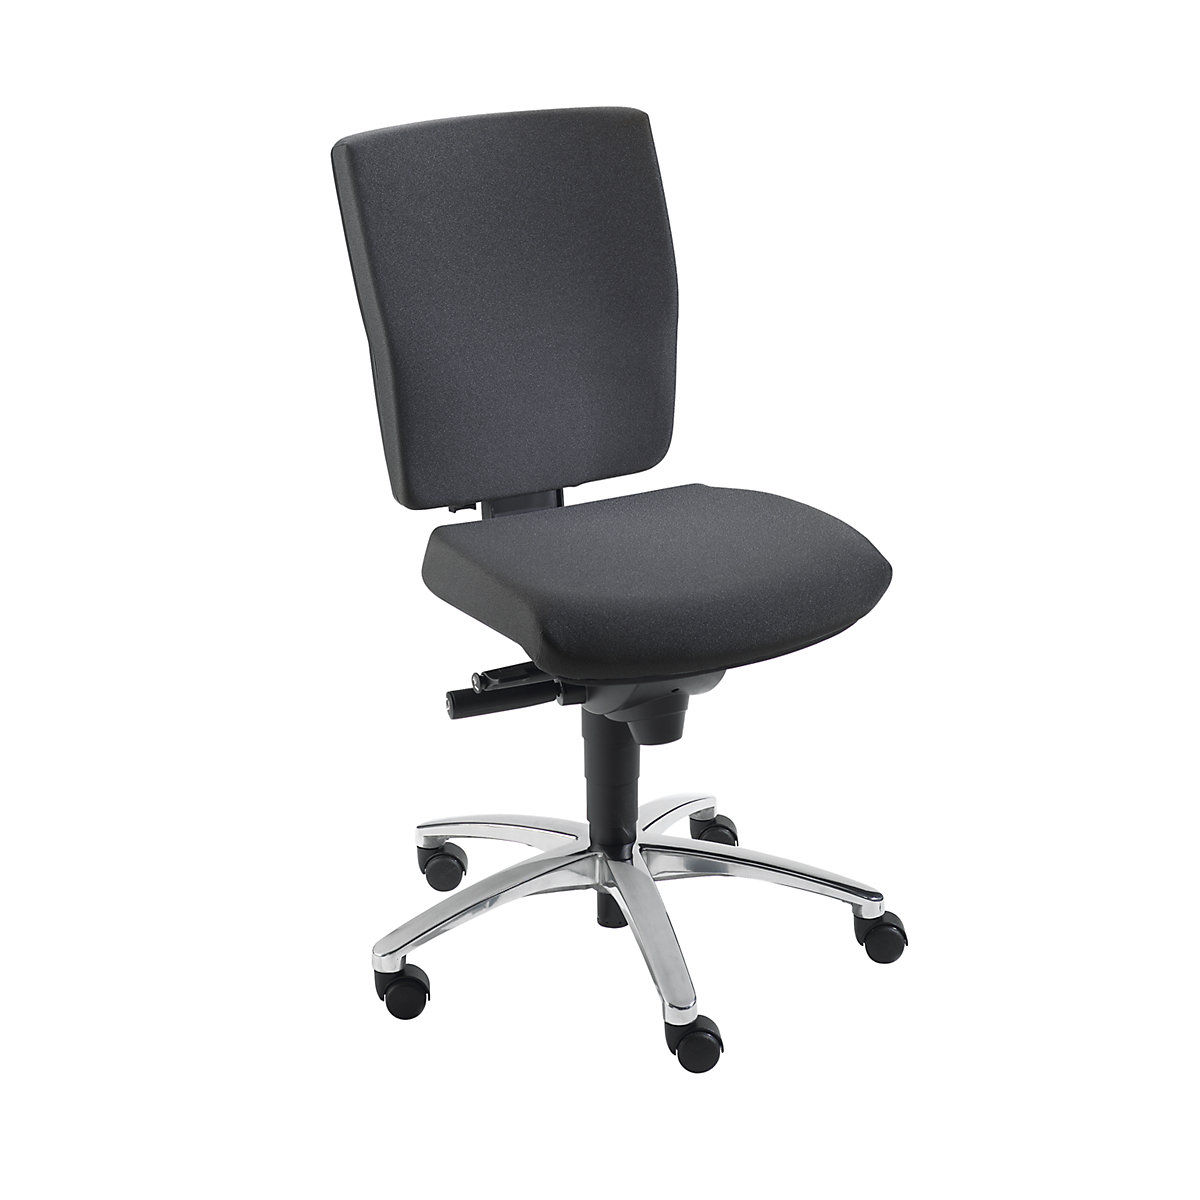 Udobna okretna stolica, sinkrona mehanika, pomično sjedalo – Dauphin, visina naslona za leđa 500 mm, u crnoj boji-3